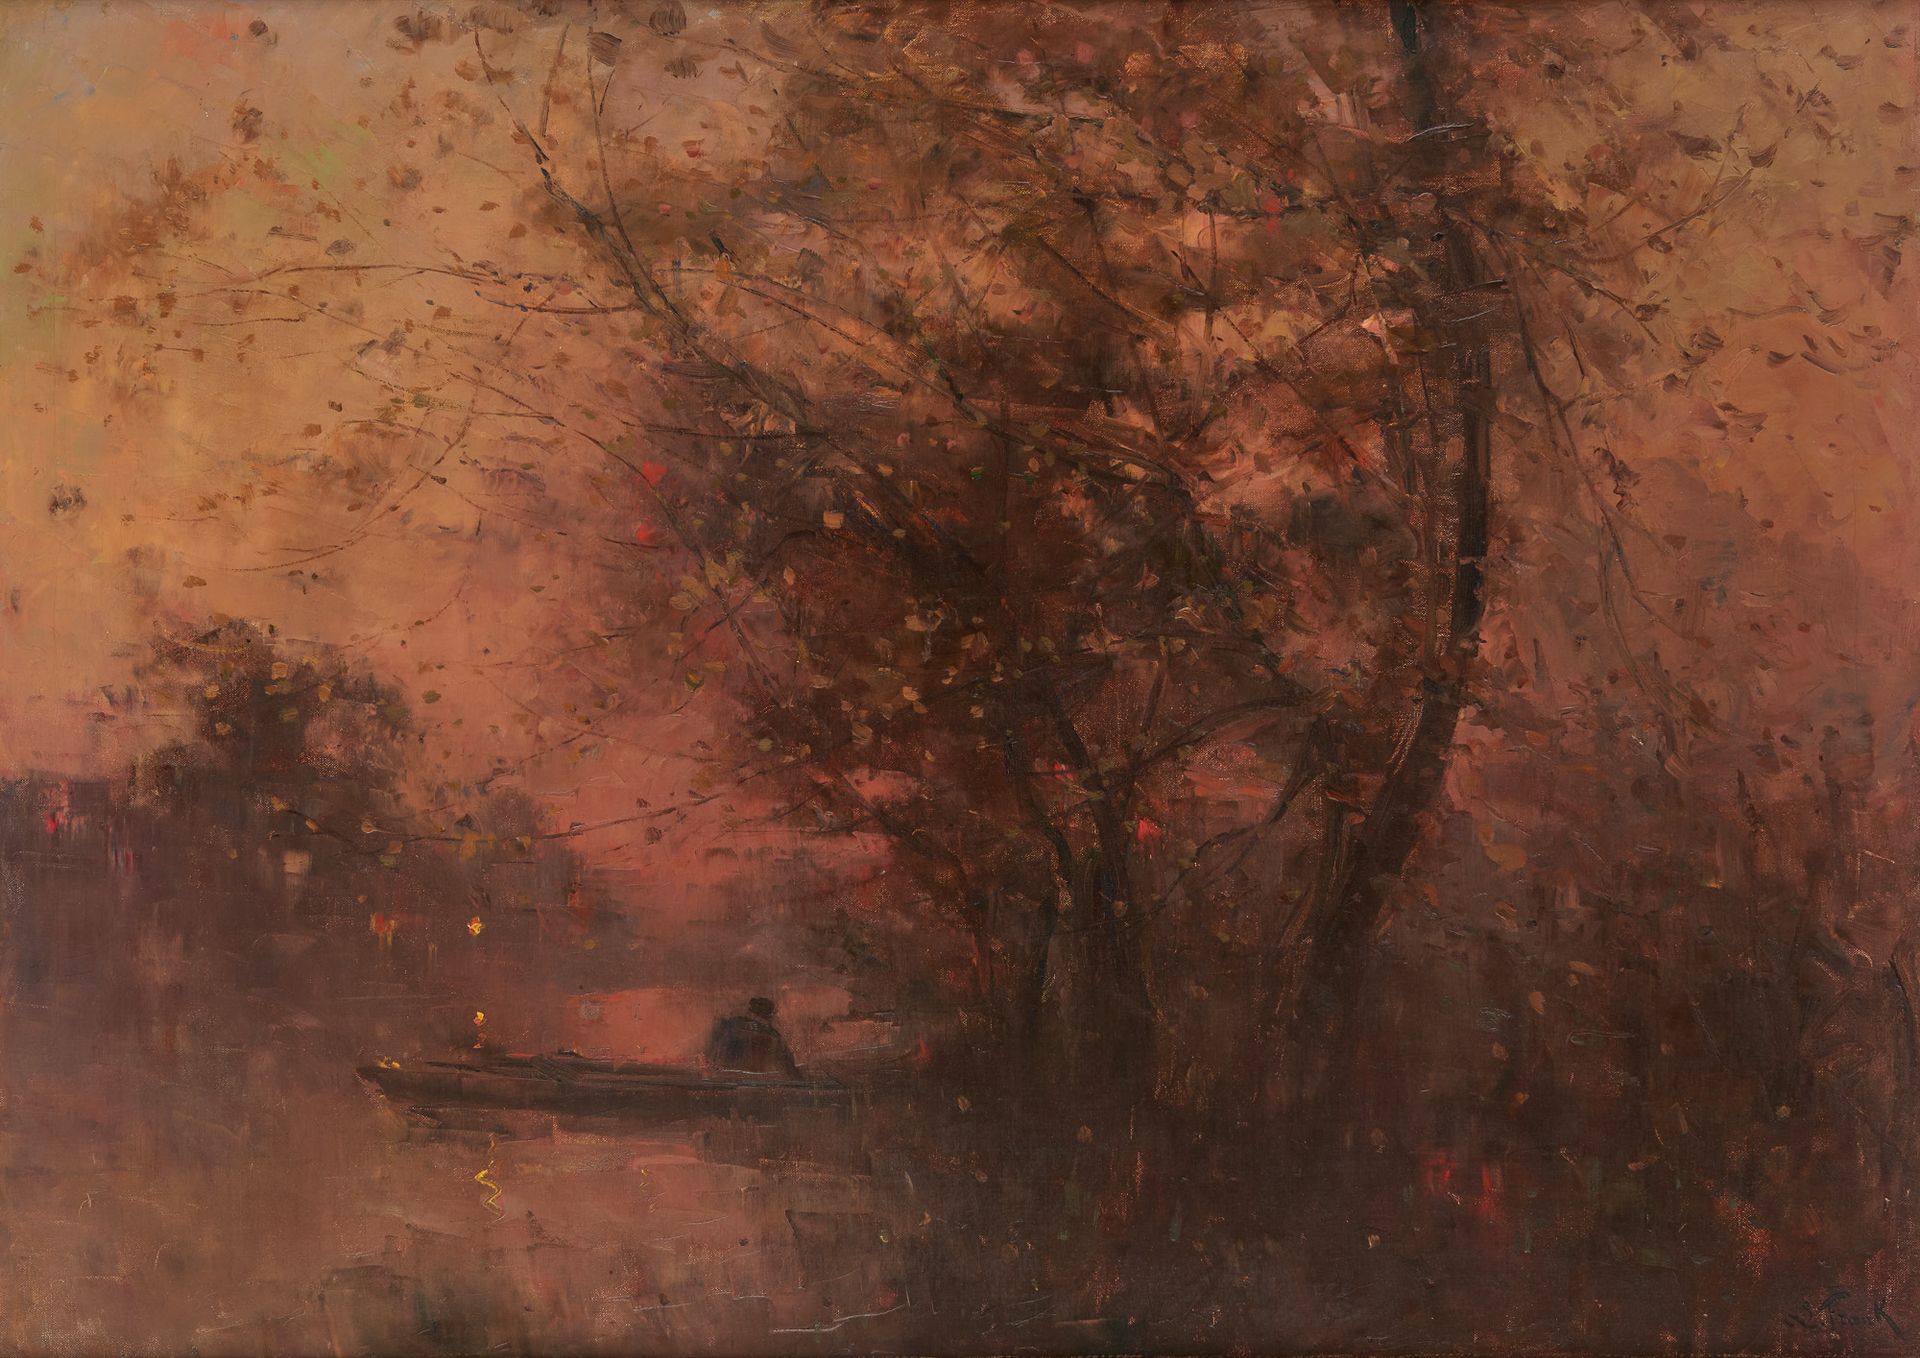 Lucien FRANK École belge (1857-1920) Öl auf Leinwand: Boot auf dem Teich.

Signi&hellip;